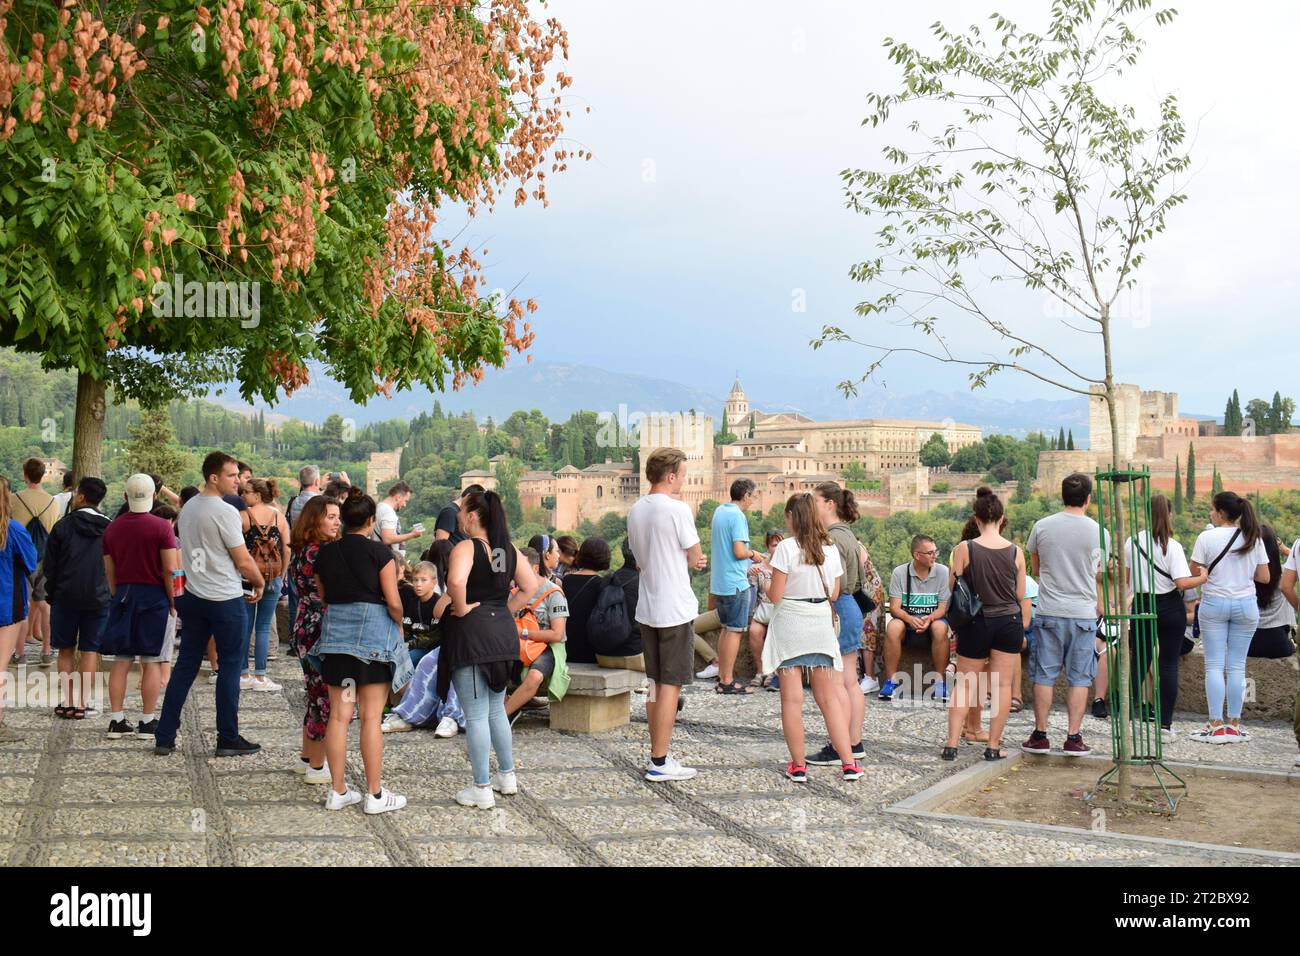 GRANADA, SPANIEN - 4. SEPTEMBER 2019: Blick auf Mirador de San Nicolas, ein öffentlicher Blickpunkt in Albaicin. Alhambra Palast im Hintergrund. Stockfoto